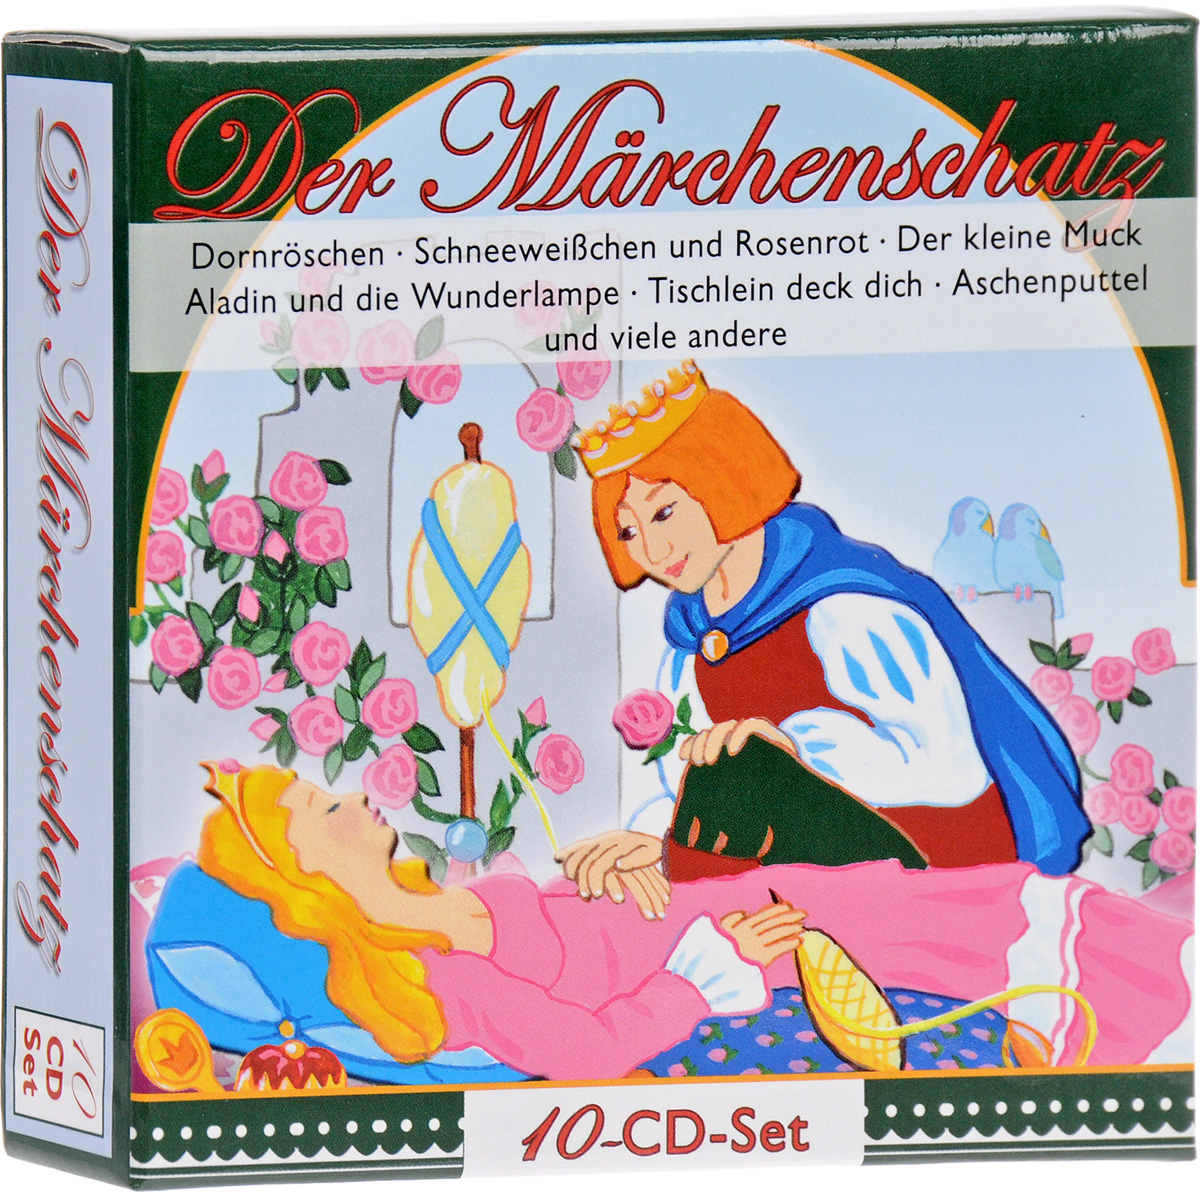 Der Marchenschatz (аудиокнига на 10 CD)